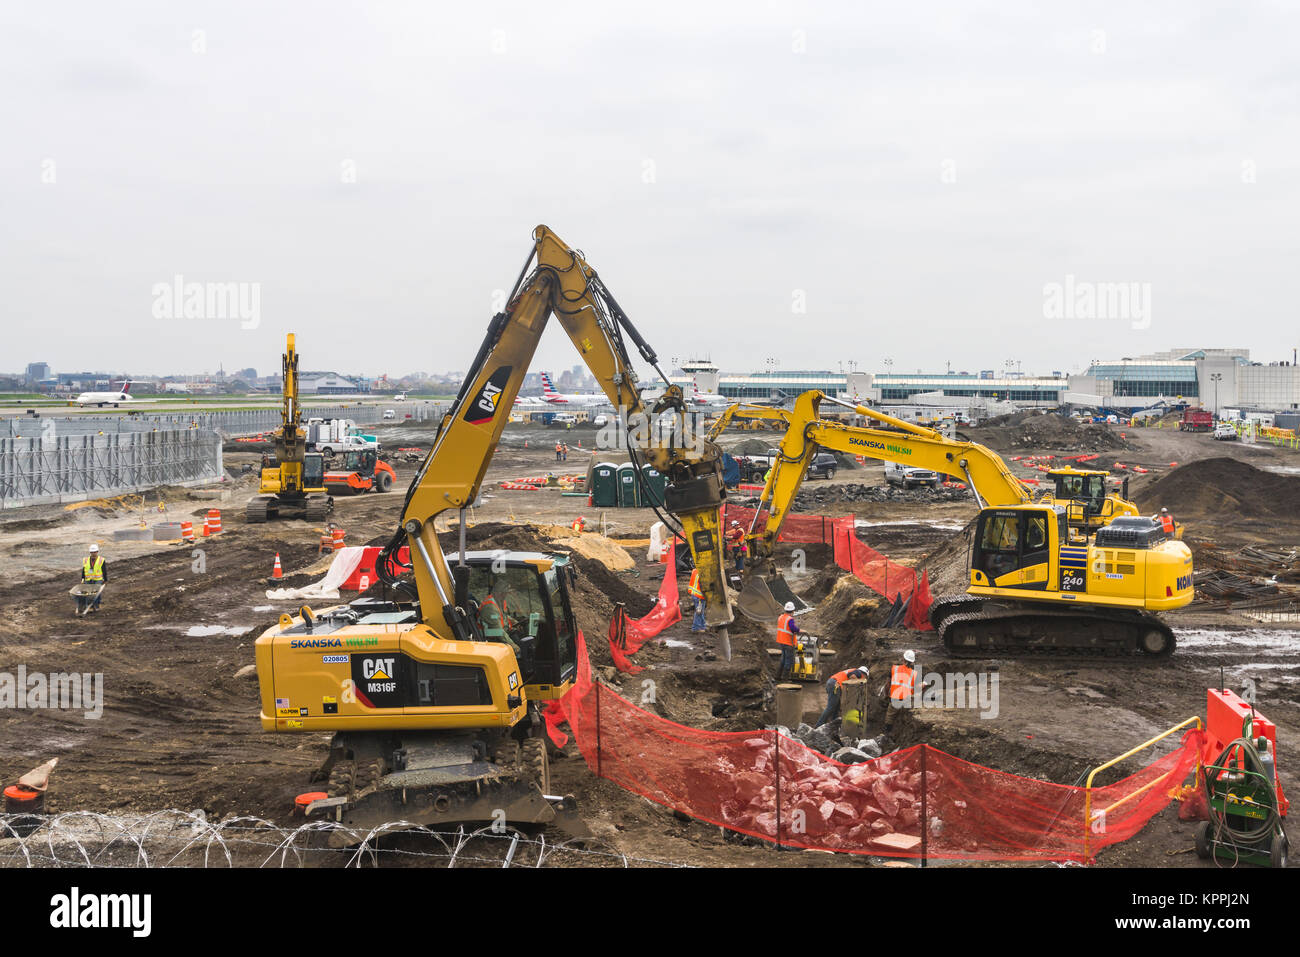 L'équipement de construction et les travailleurs de la construction de la nouvelle aérogare de l'aéroport La Guardia dans le Queens, New York, USA Banque D'Images